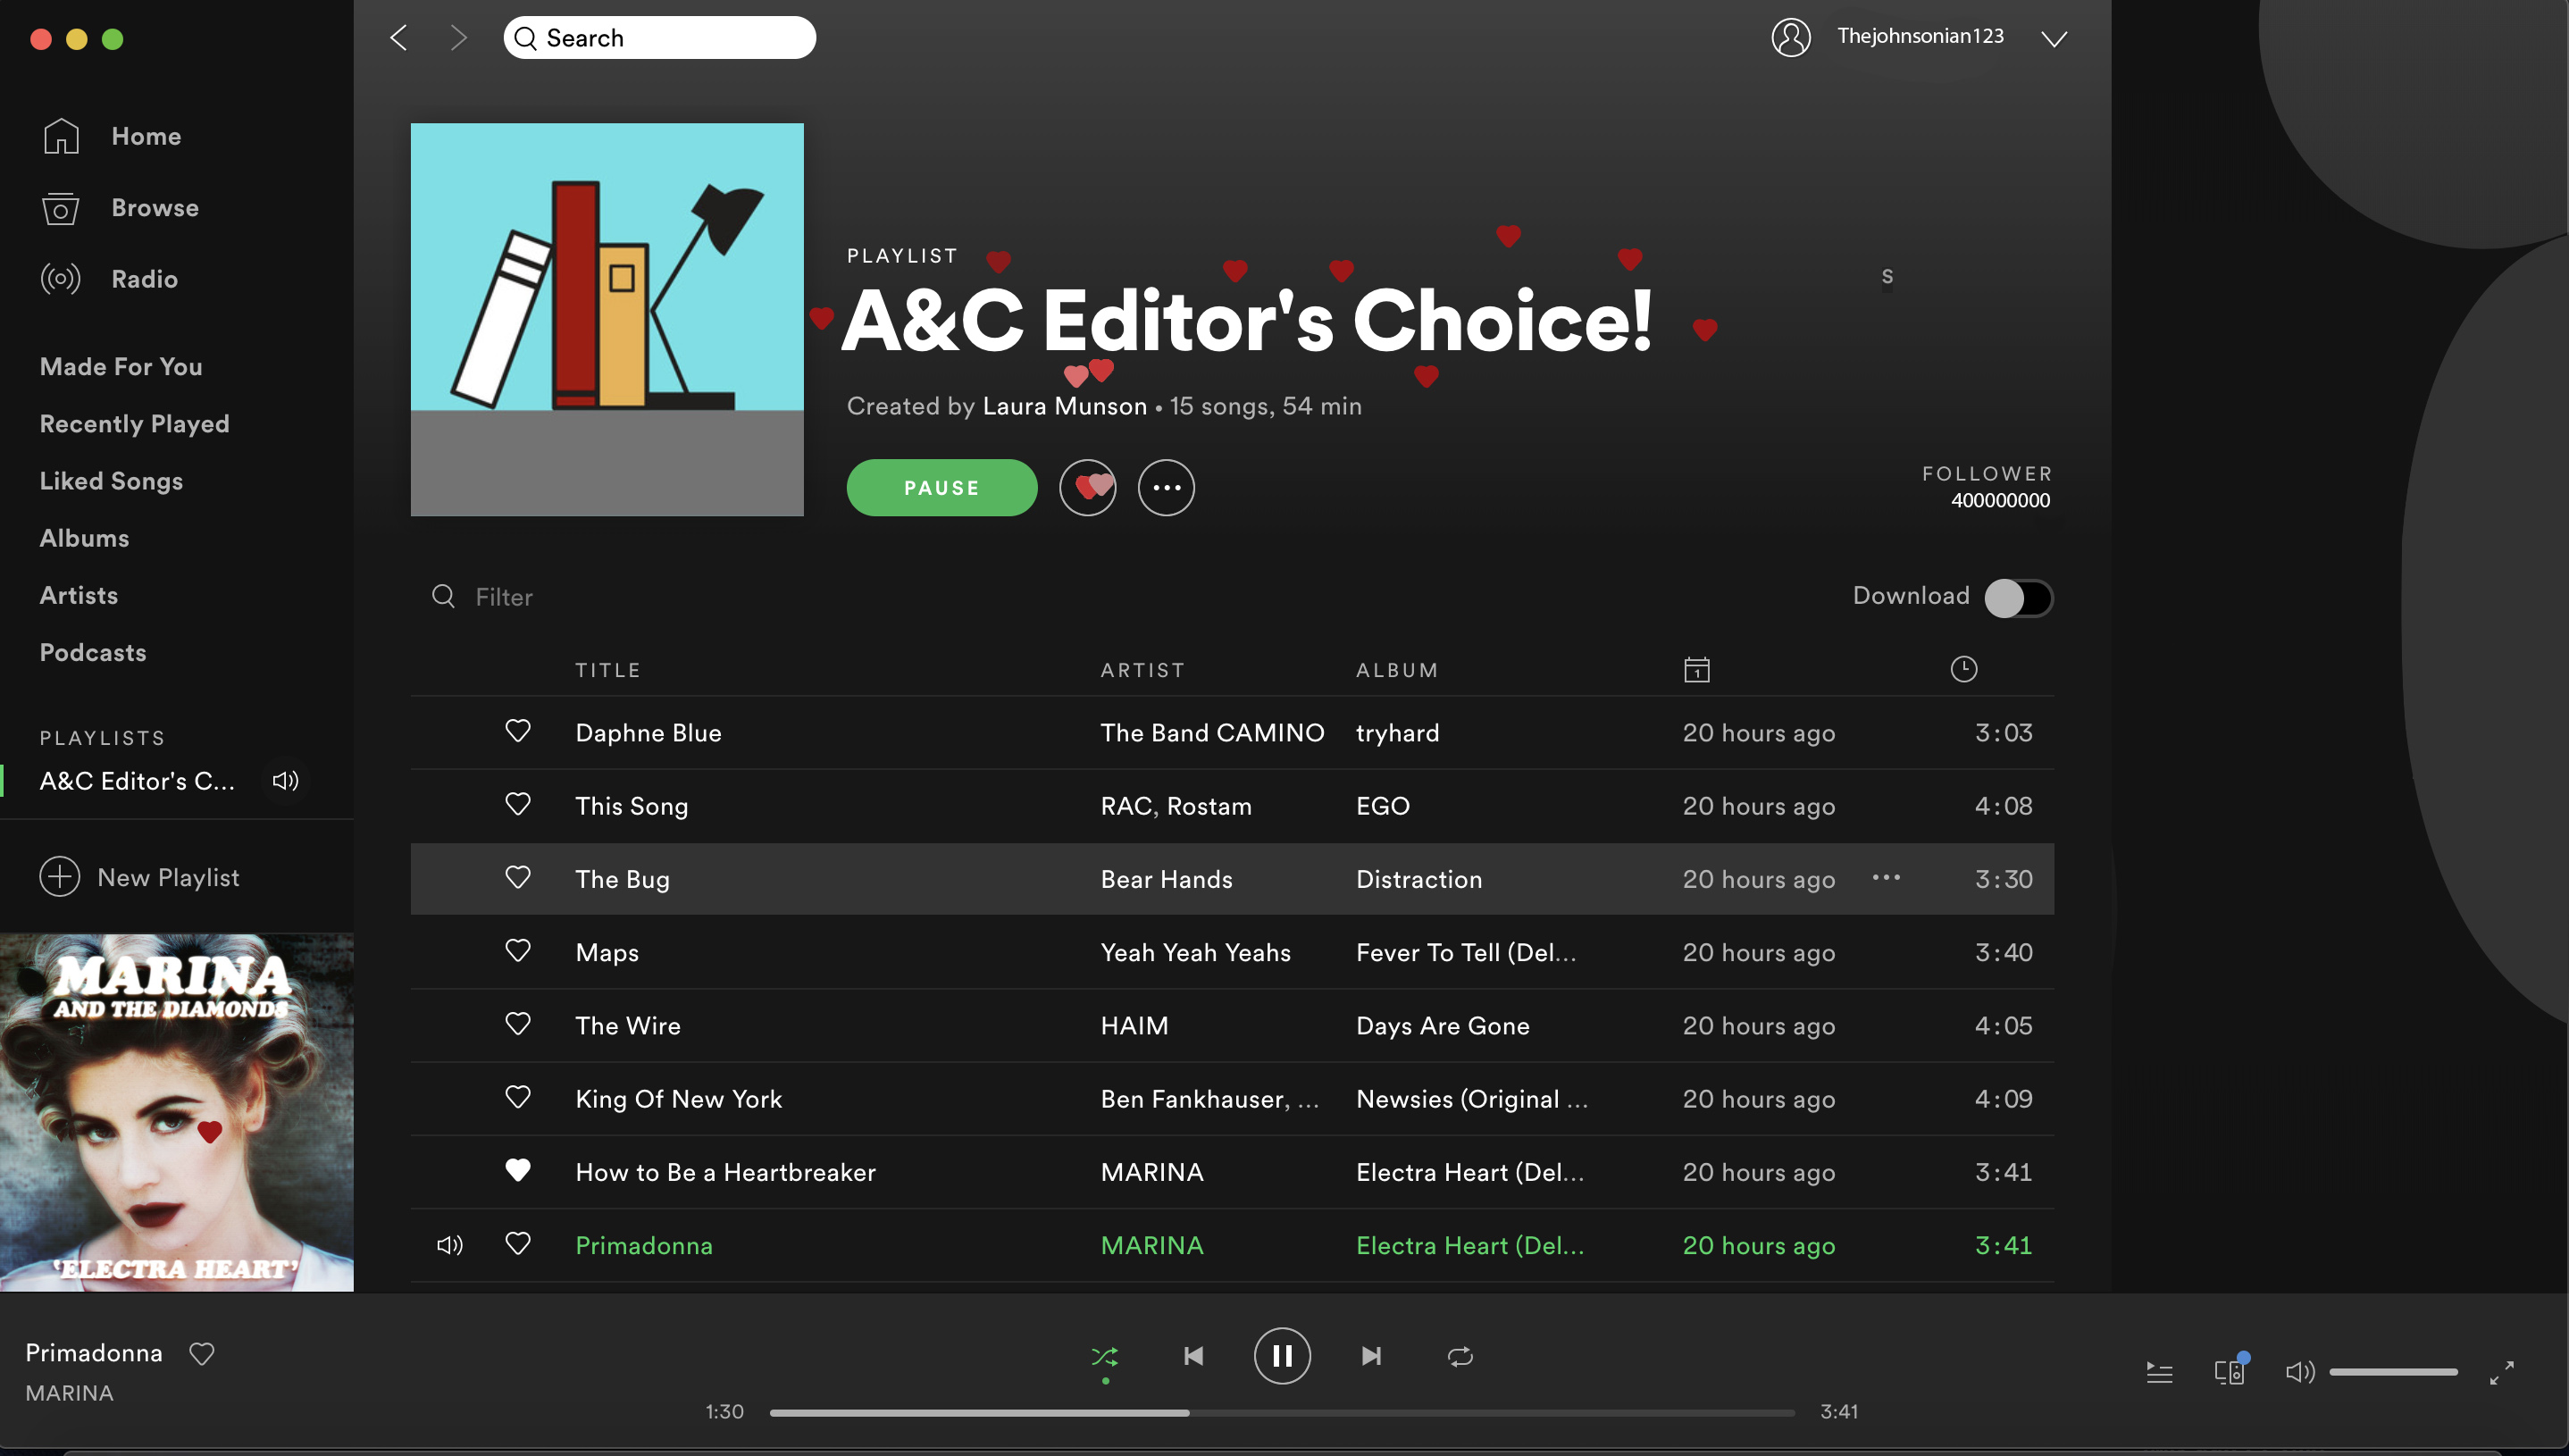 A&C Editor’s Choice